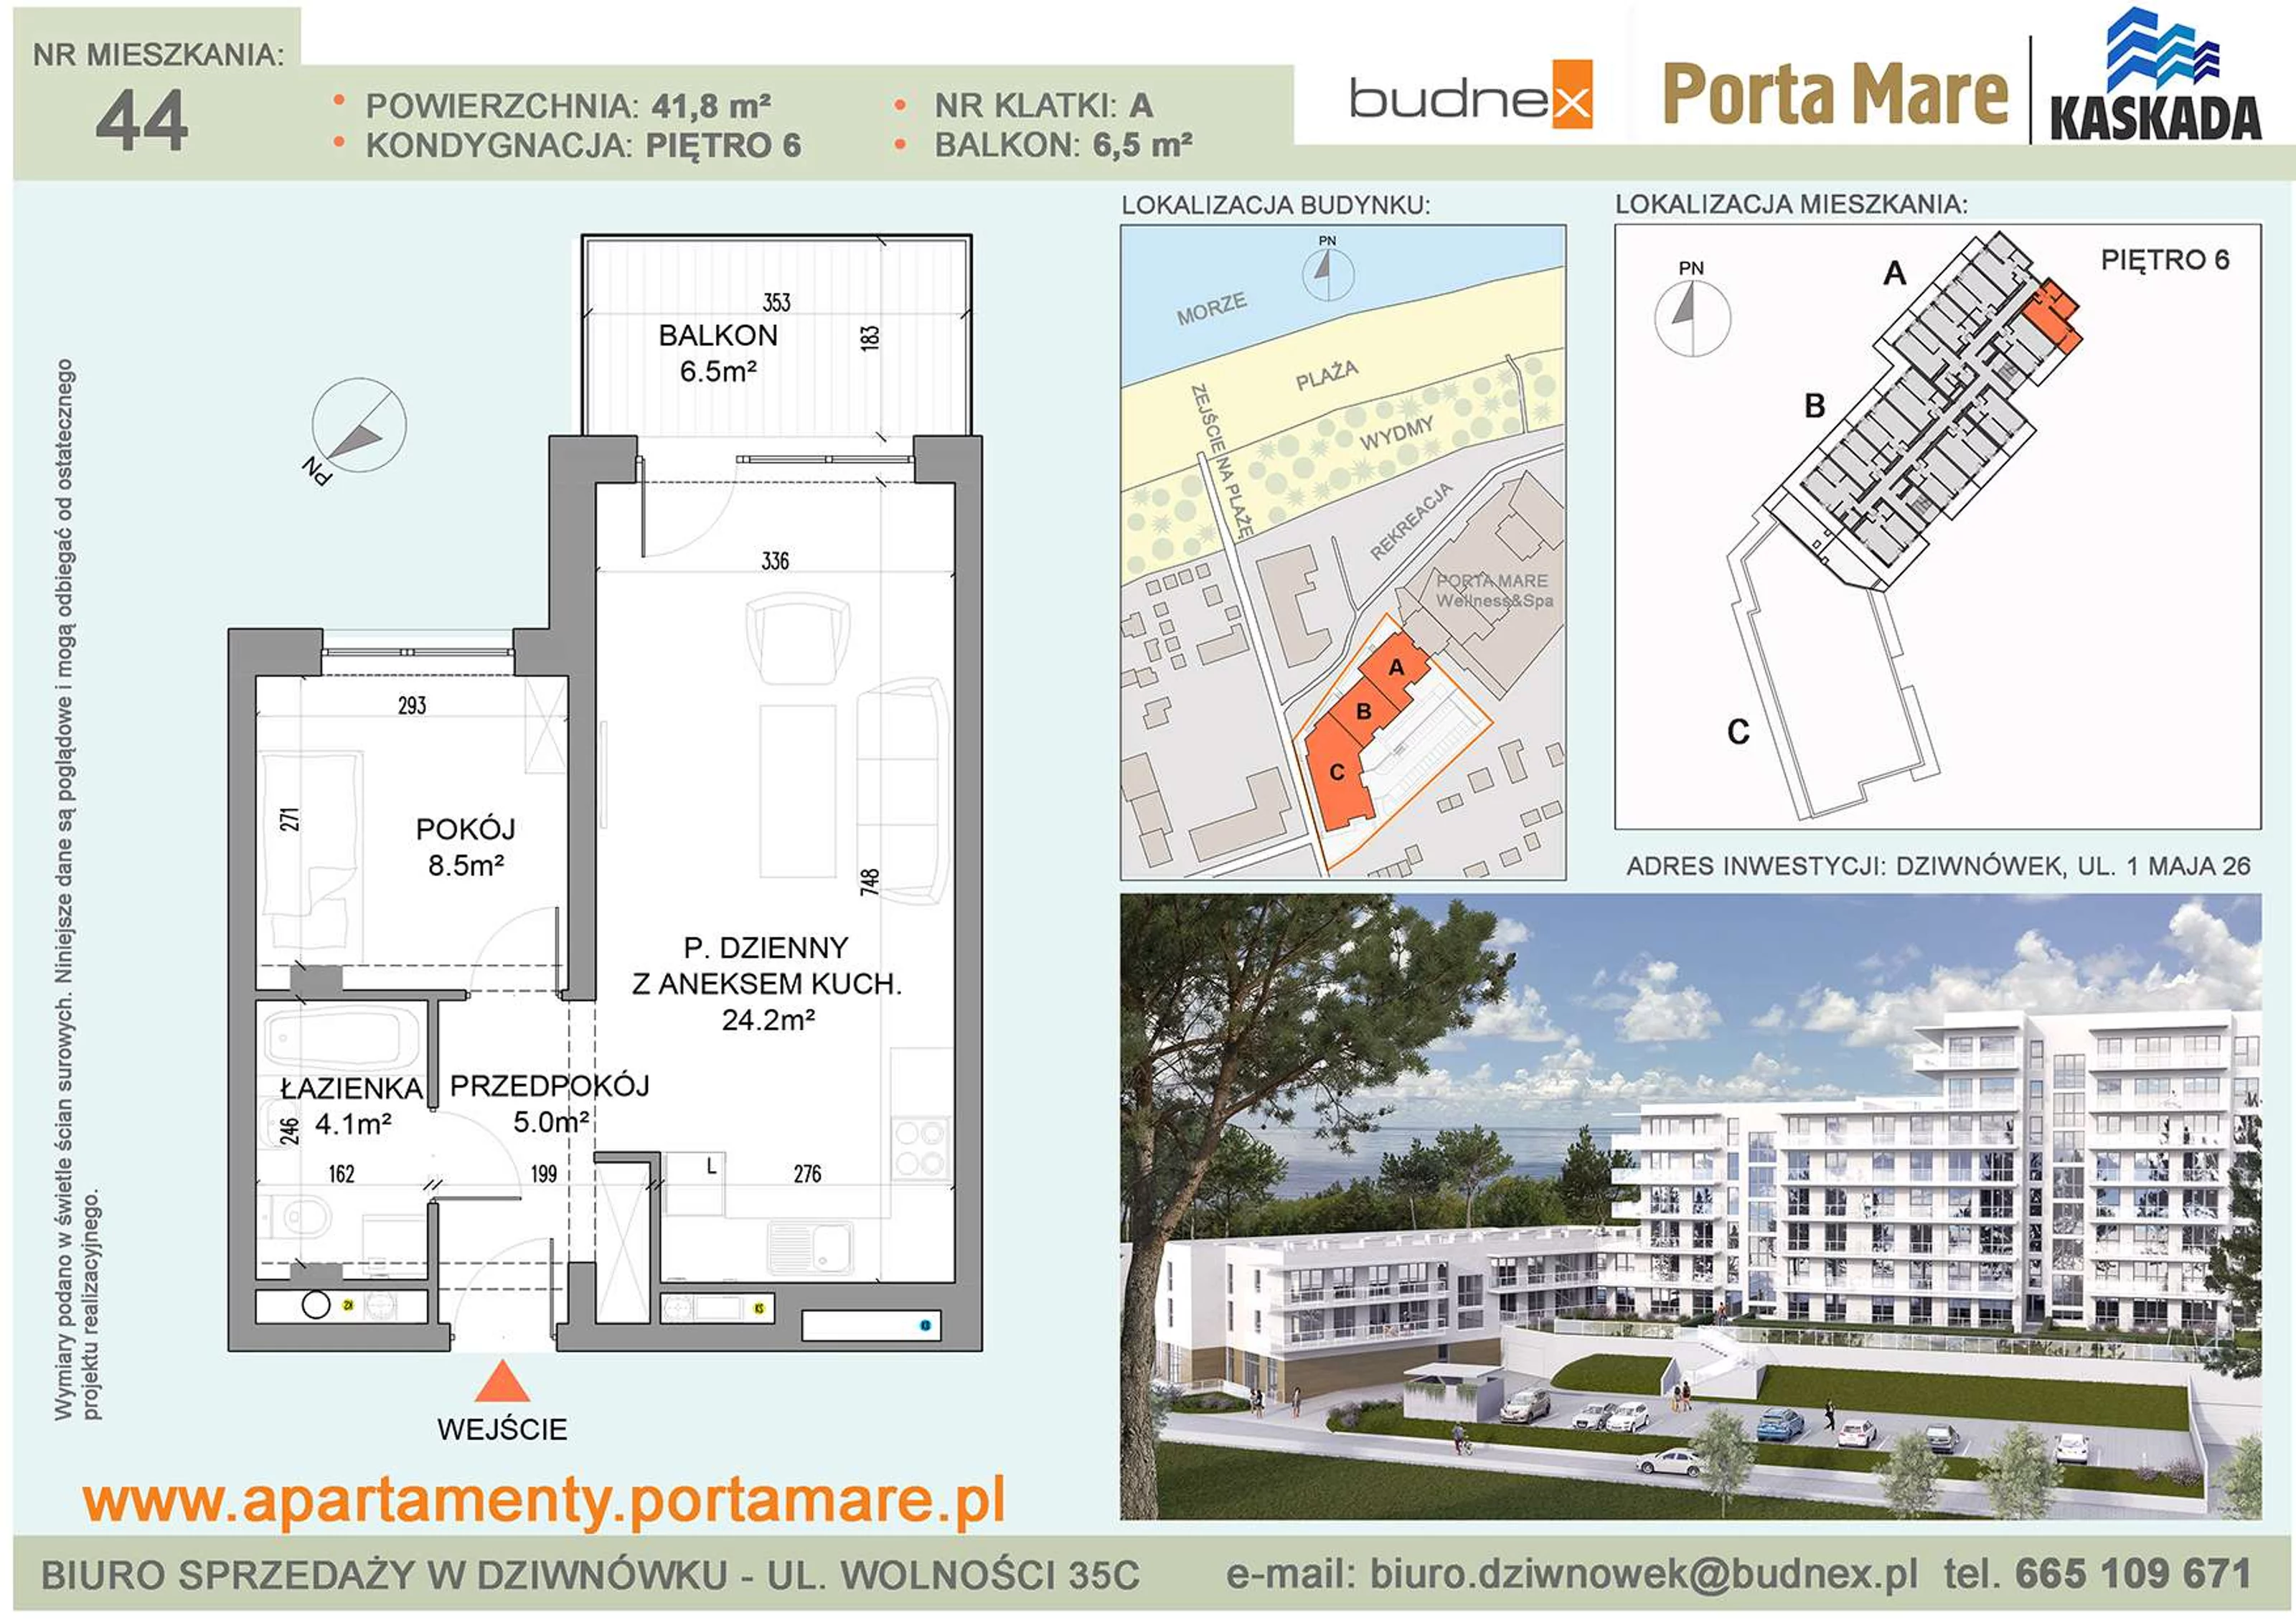 Mieszkanie 41,80 m², piętro 6, oferta nr A/M44, Porta Mare Kaskada, Dziwnówek, ul. 1 Maja 26